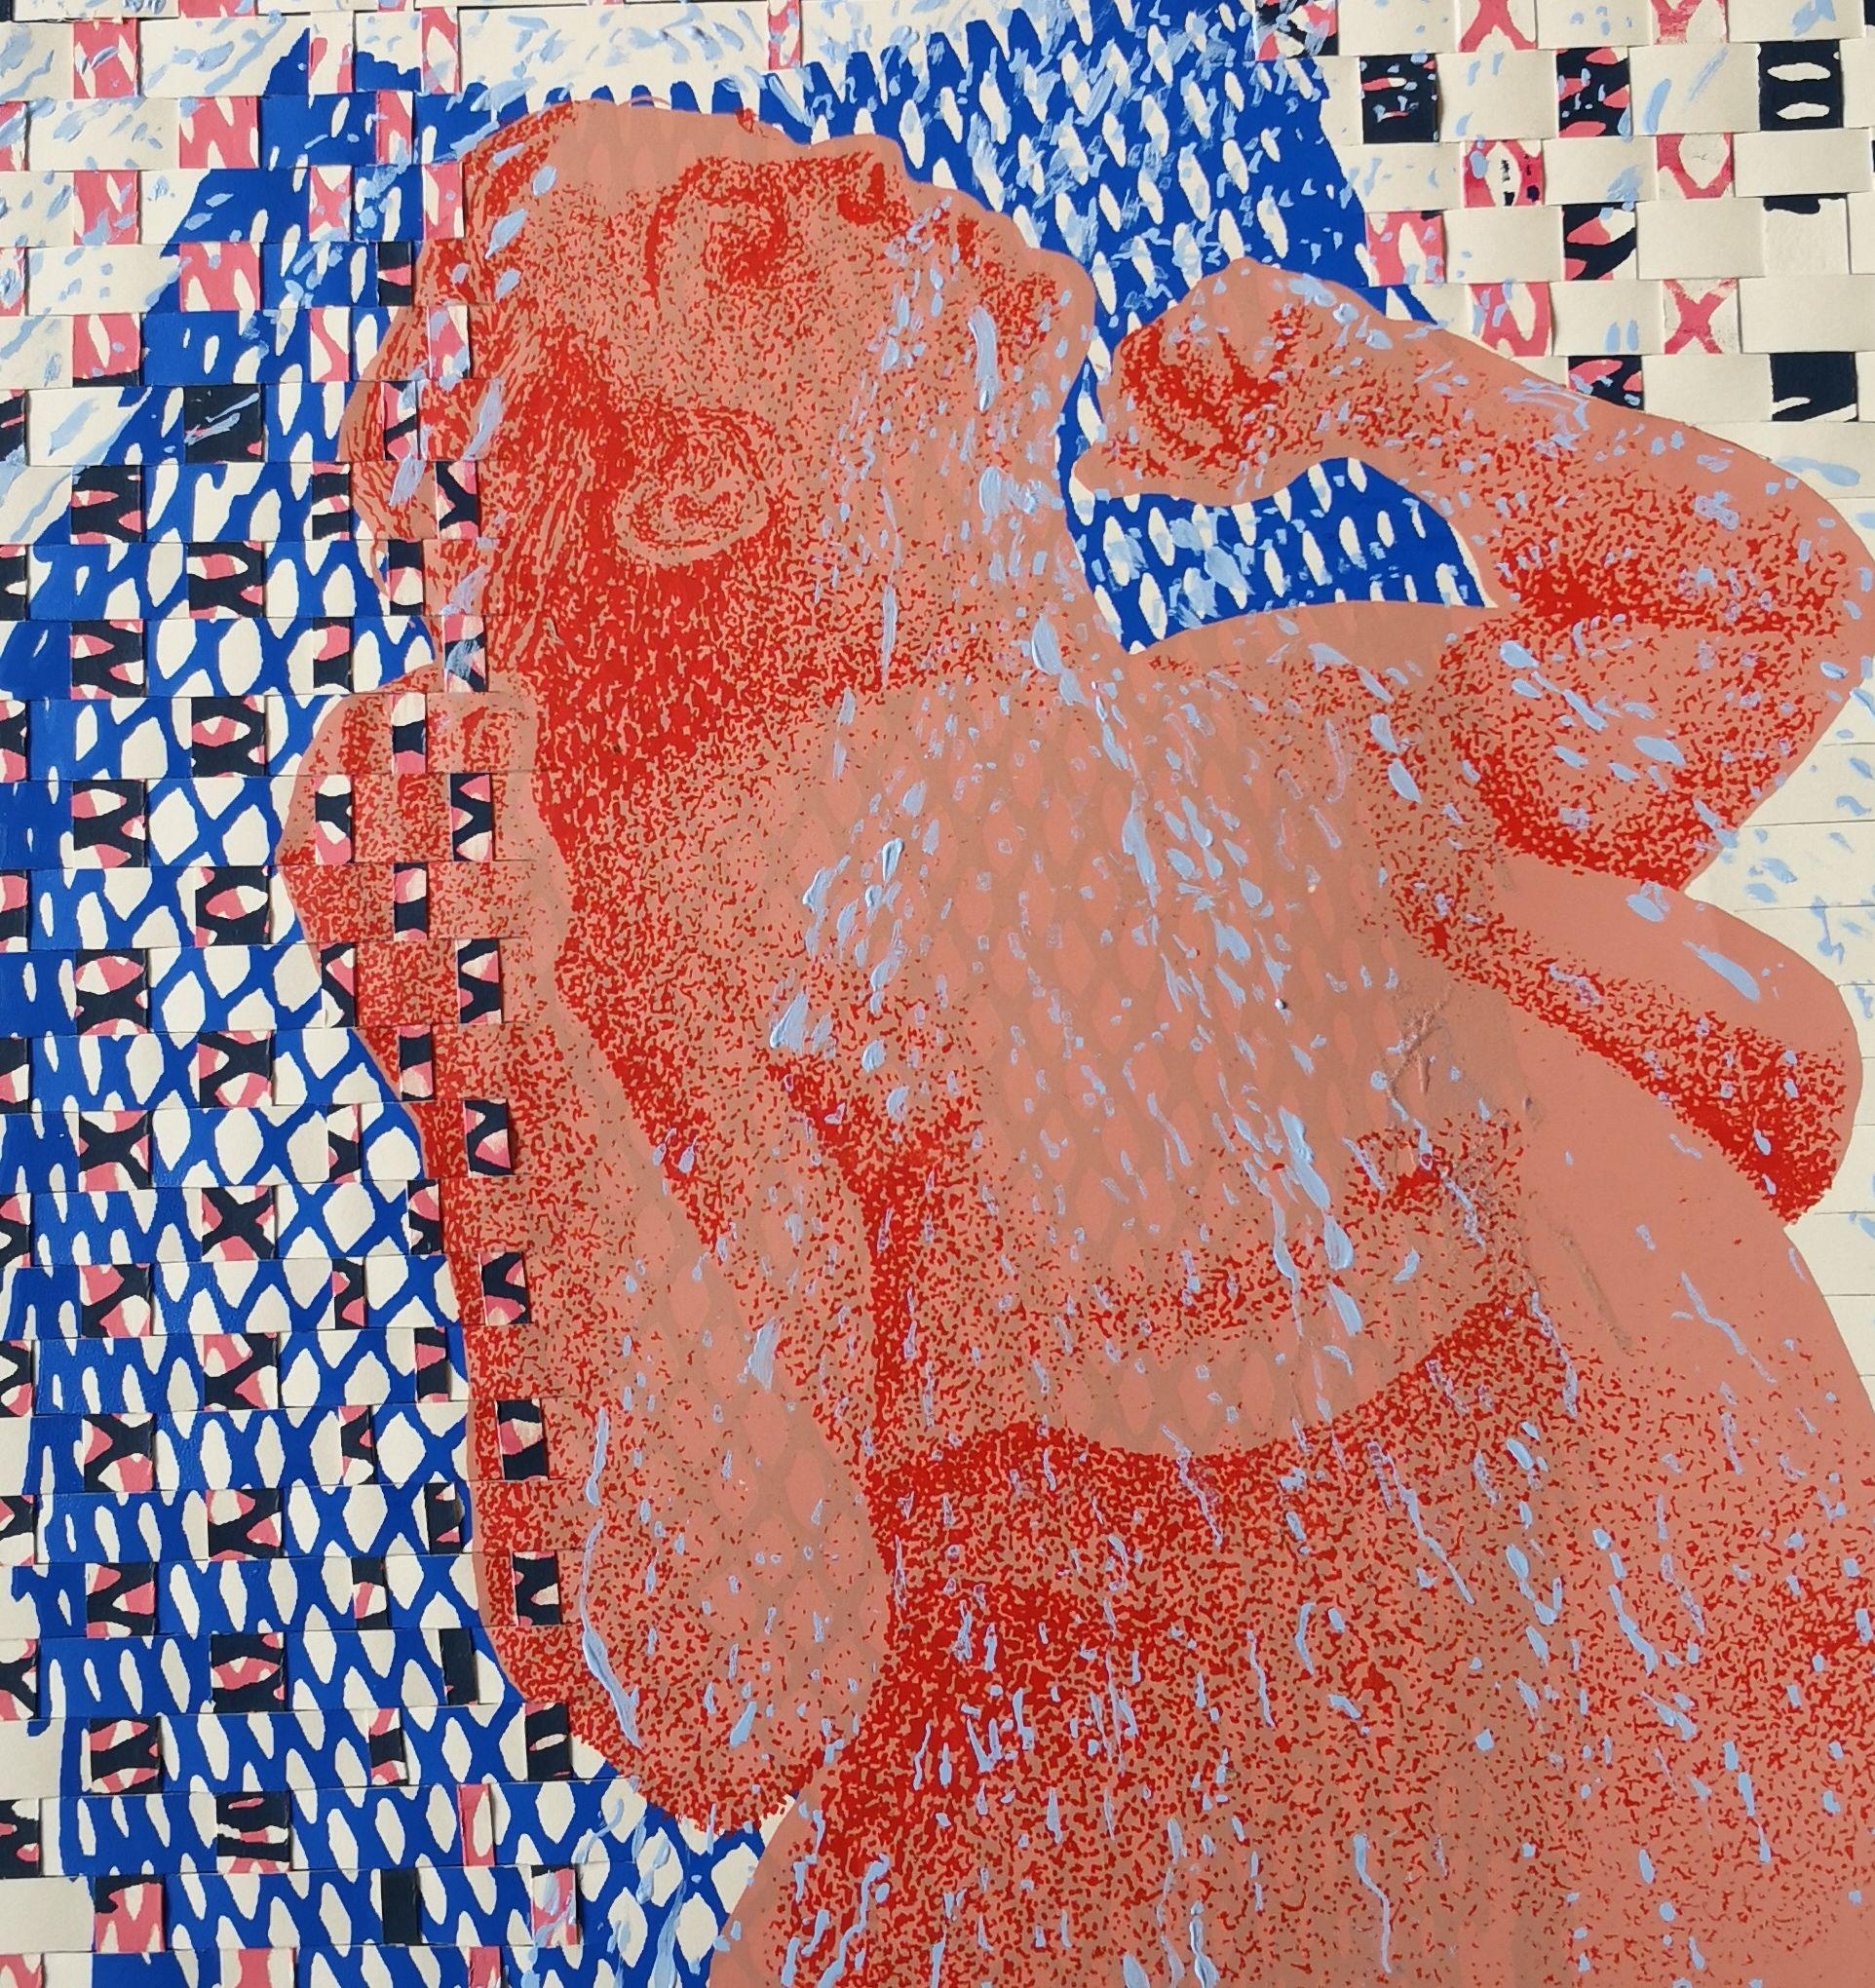 Under The Shower, handgedrucktes Werk, Raumteiler (Expressionismus), Print, von Anyck Alvarez Kerloch